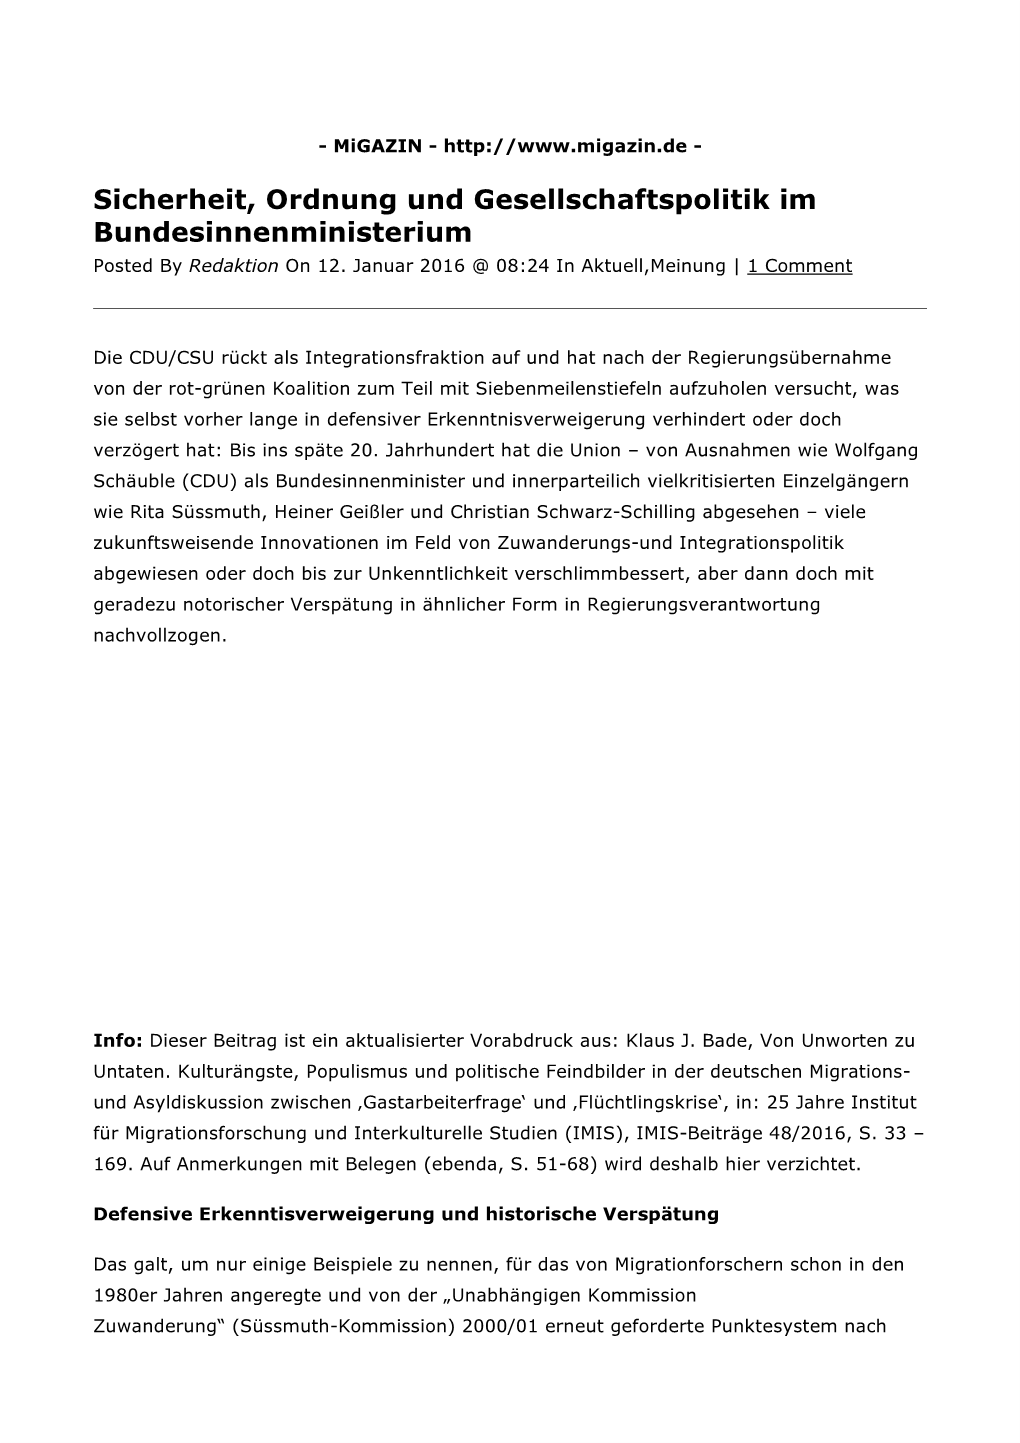 Sicherheit, Ordnung Und Gesellschaftspolitik Im Bundesinnenministerium Posted by Redaktion on 12